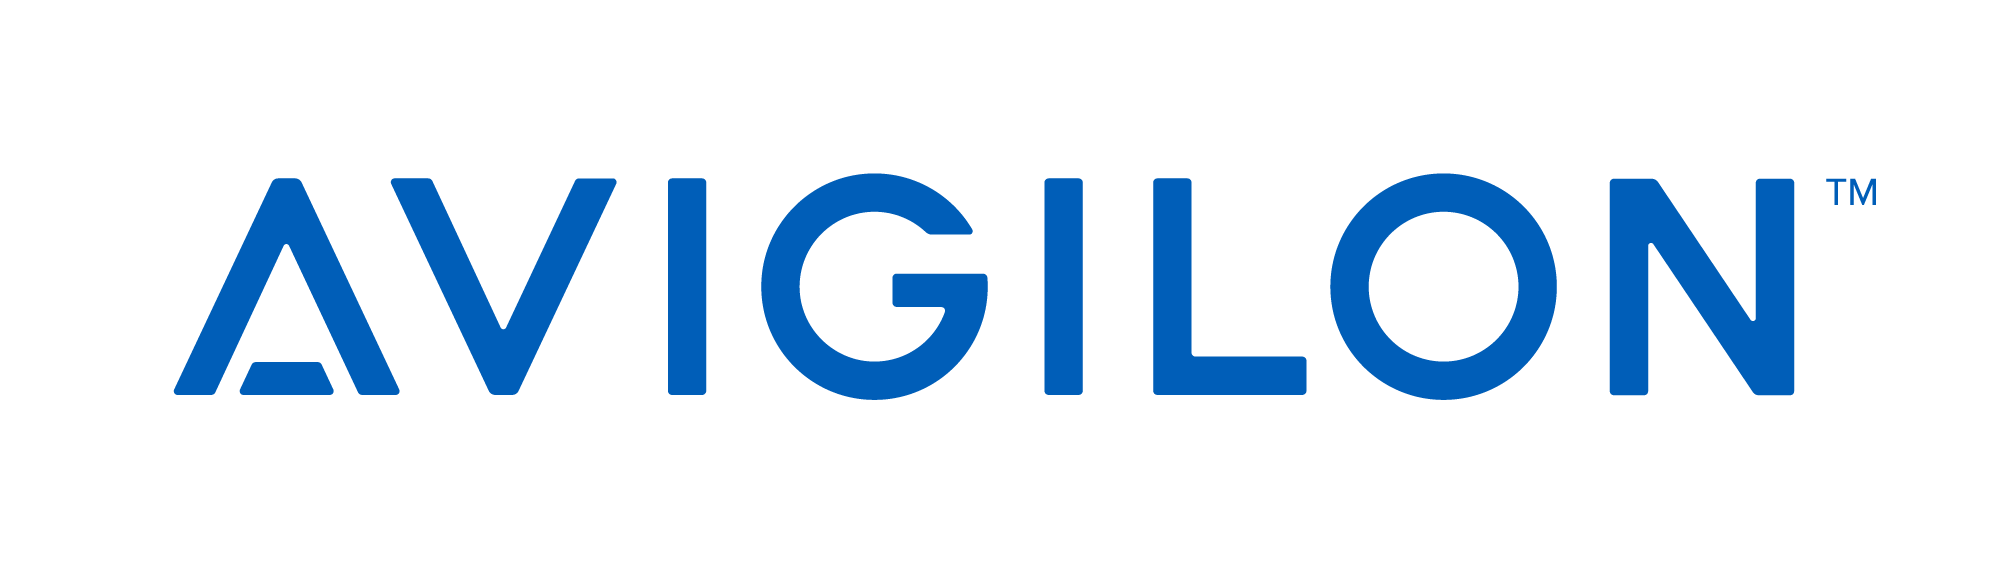 Avigilon-Logo-